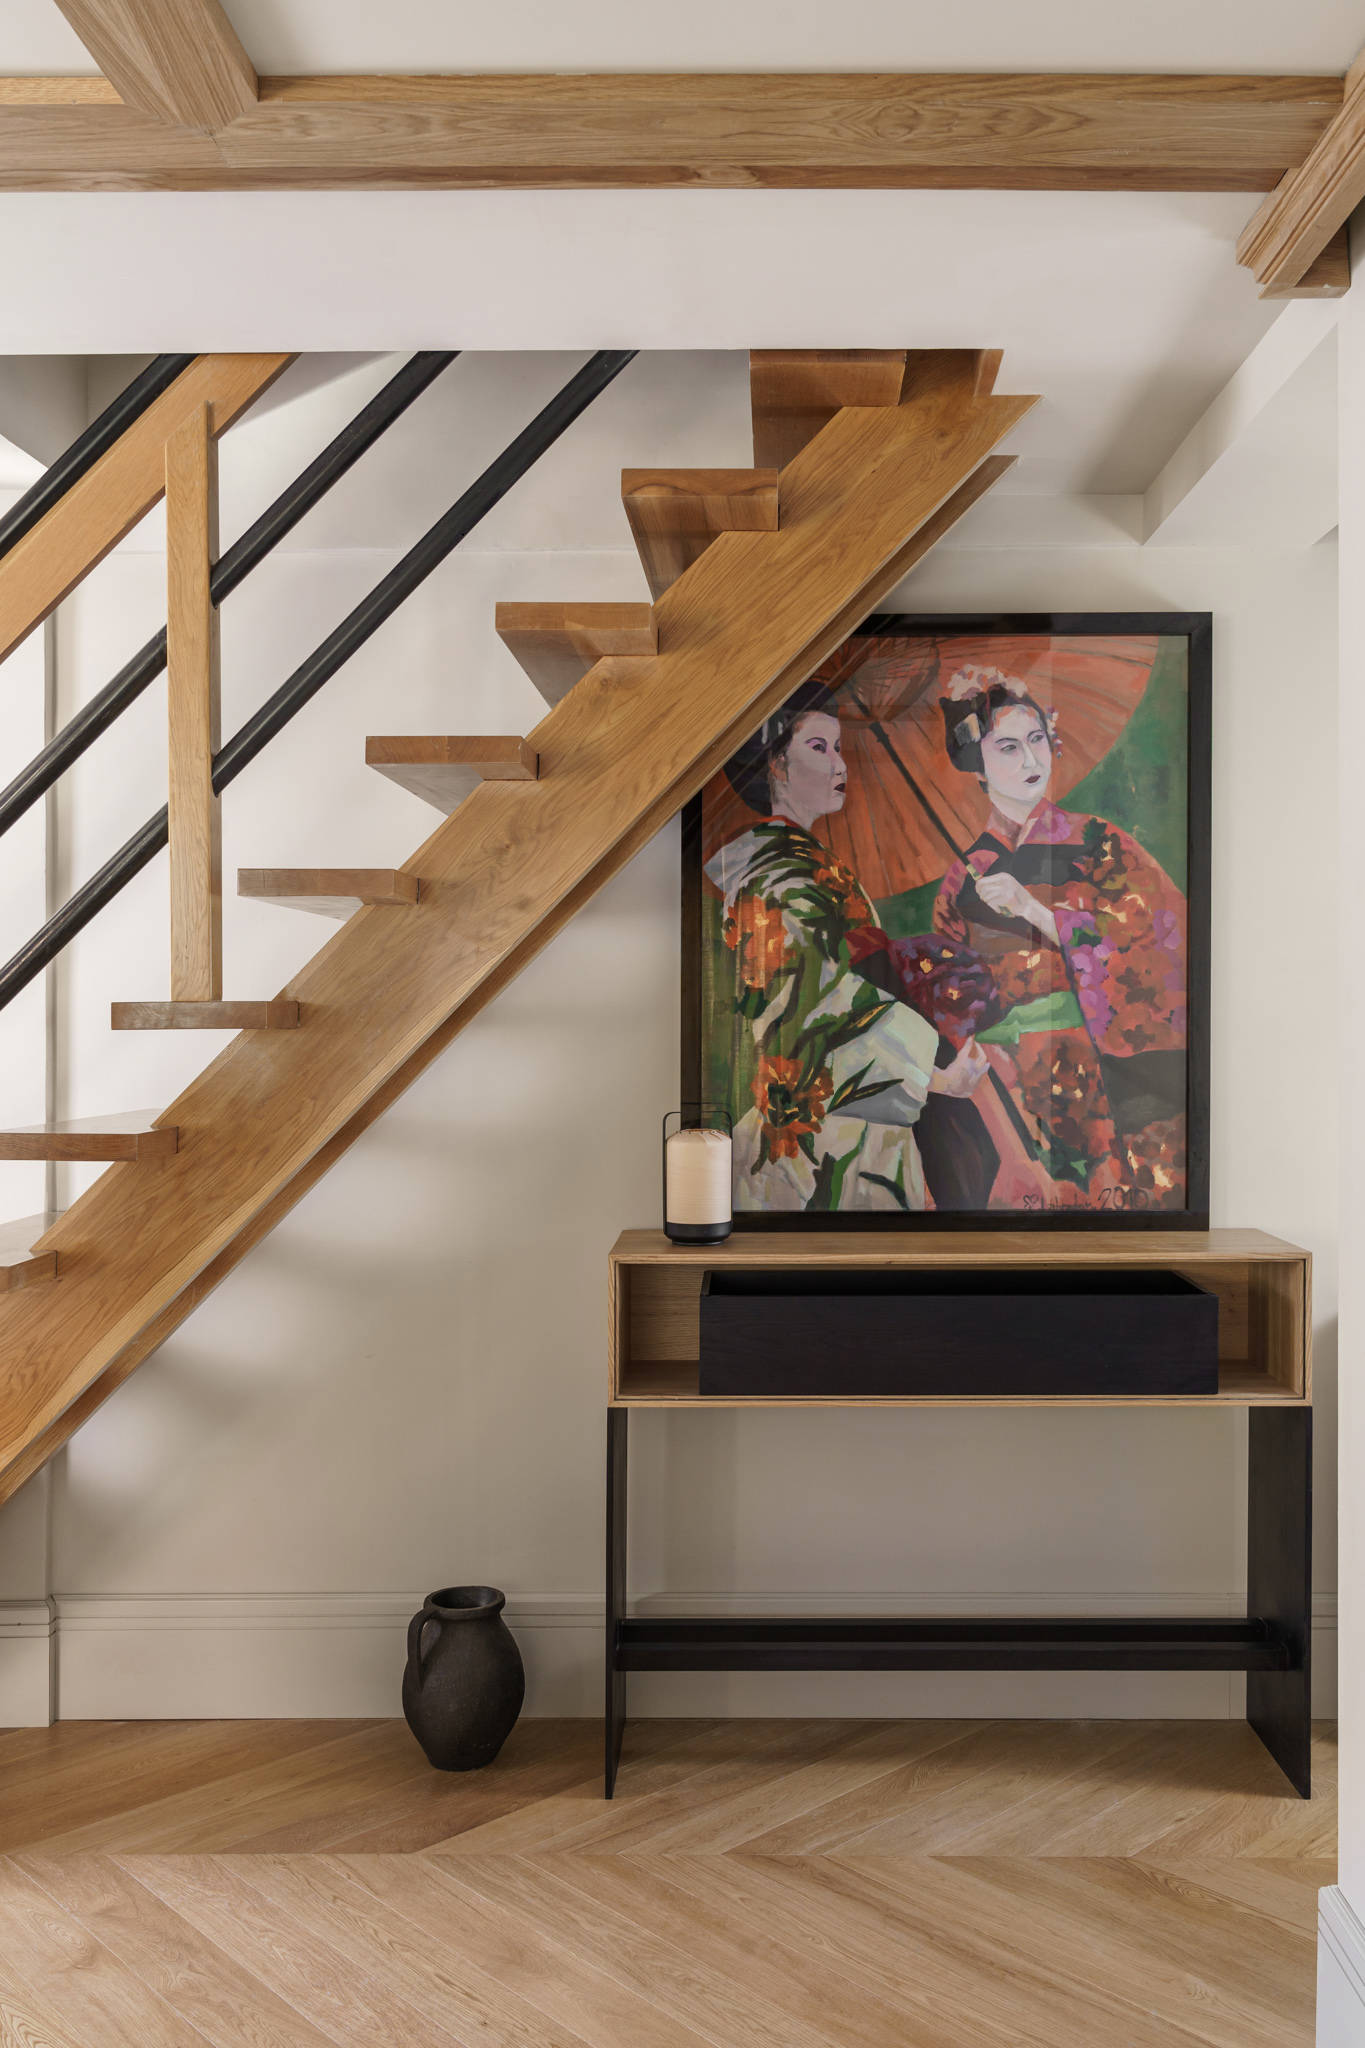 Recibidor con escalera y pavimento de madera, consola, jarrón, vela y cuadro de inspiración asiática.